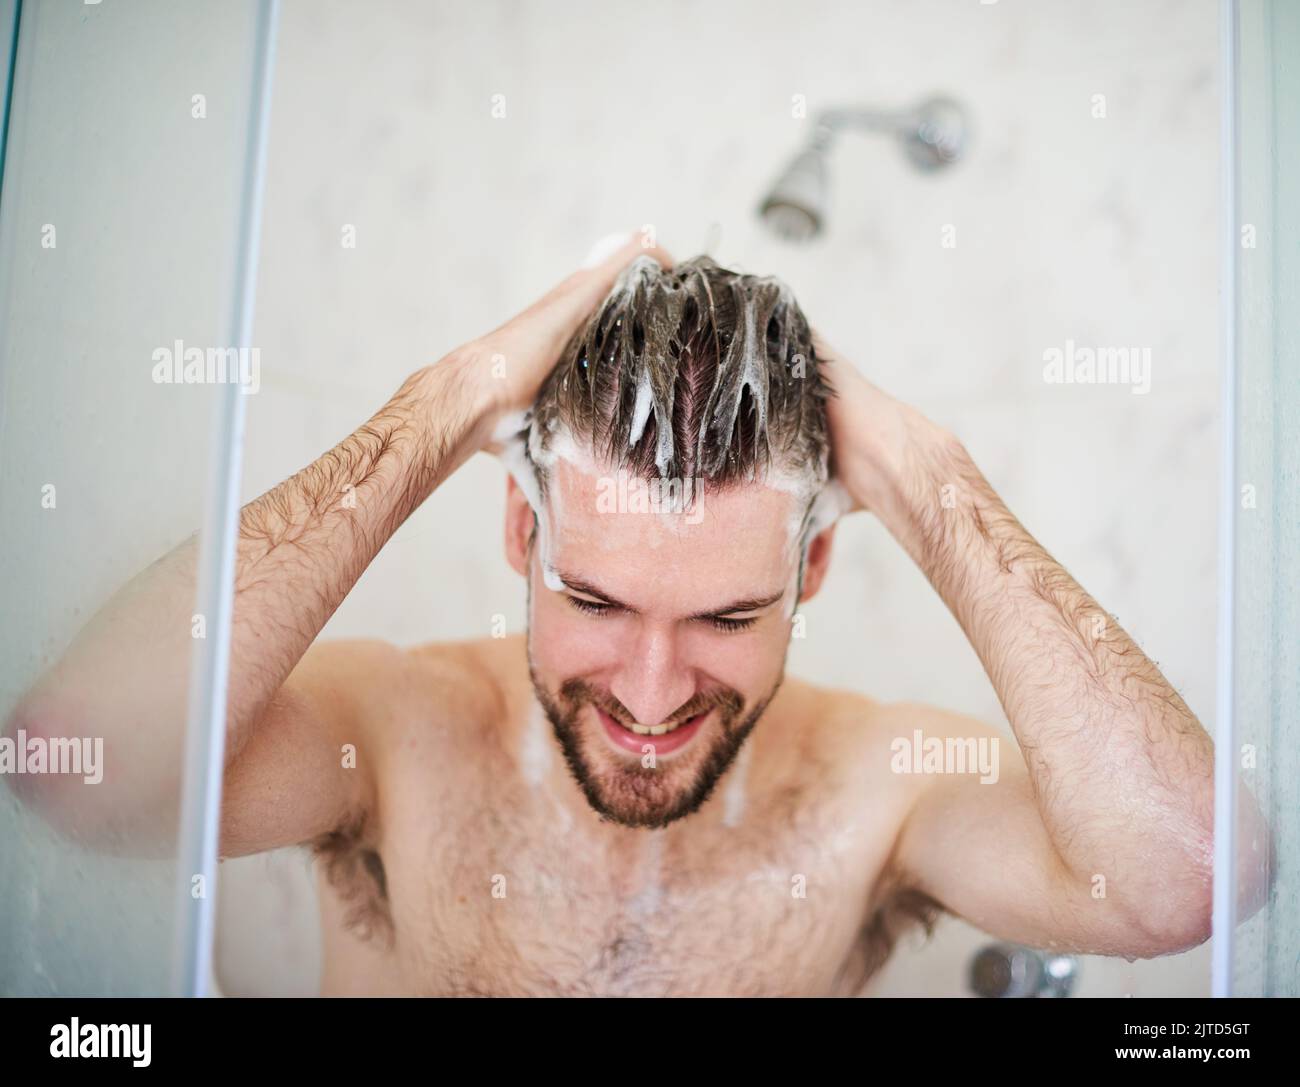 Shampoo und Zustand für eine saubere Kopfhaut. Ein hübscher junger Mann, der zu Hause duschen kann. Stockfoto